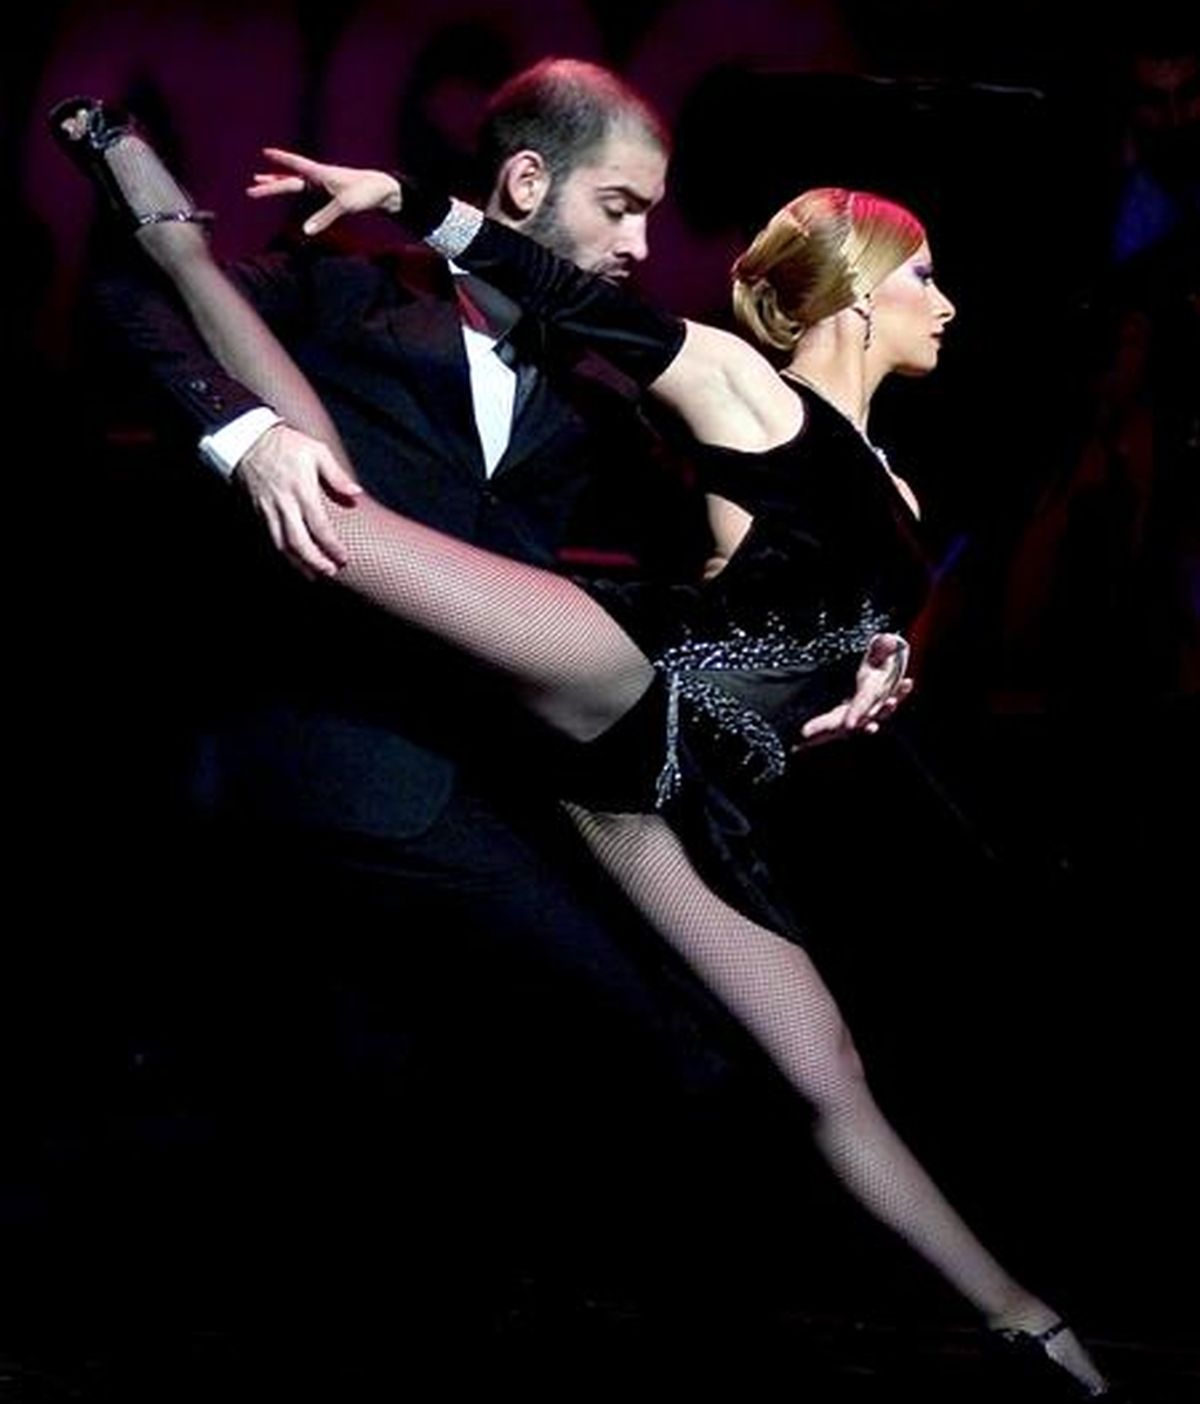 El espectáculo Tango Fire", actualmente en cartelera en Londres, llegará el 26 de mayo a Barcelona, la ciudad en la que Carlos Gardel grabó "La cumparsita" en 1927, combinando la música de los arrabales de Buenos Aires con las sensuales coreografías porteñas de cinco parejas de baile. EFE